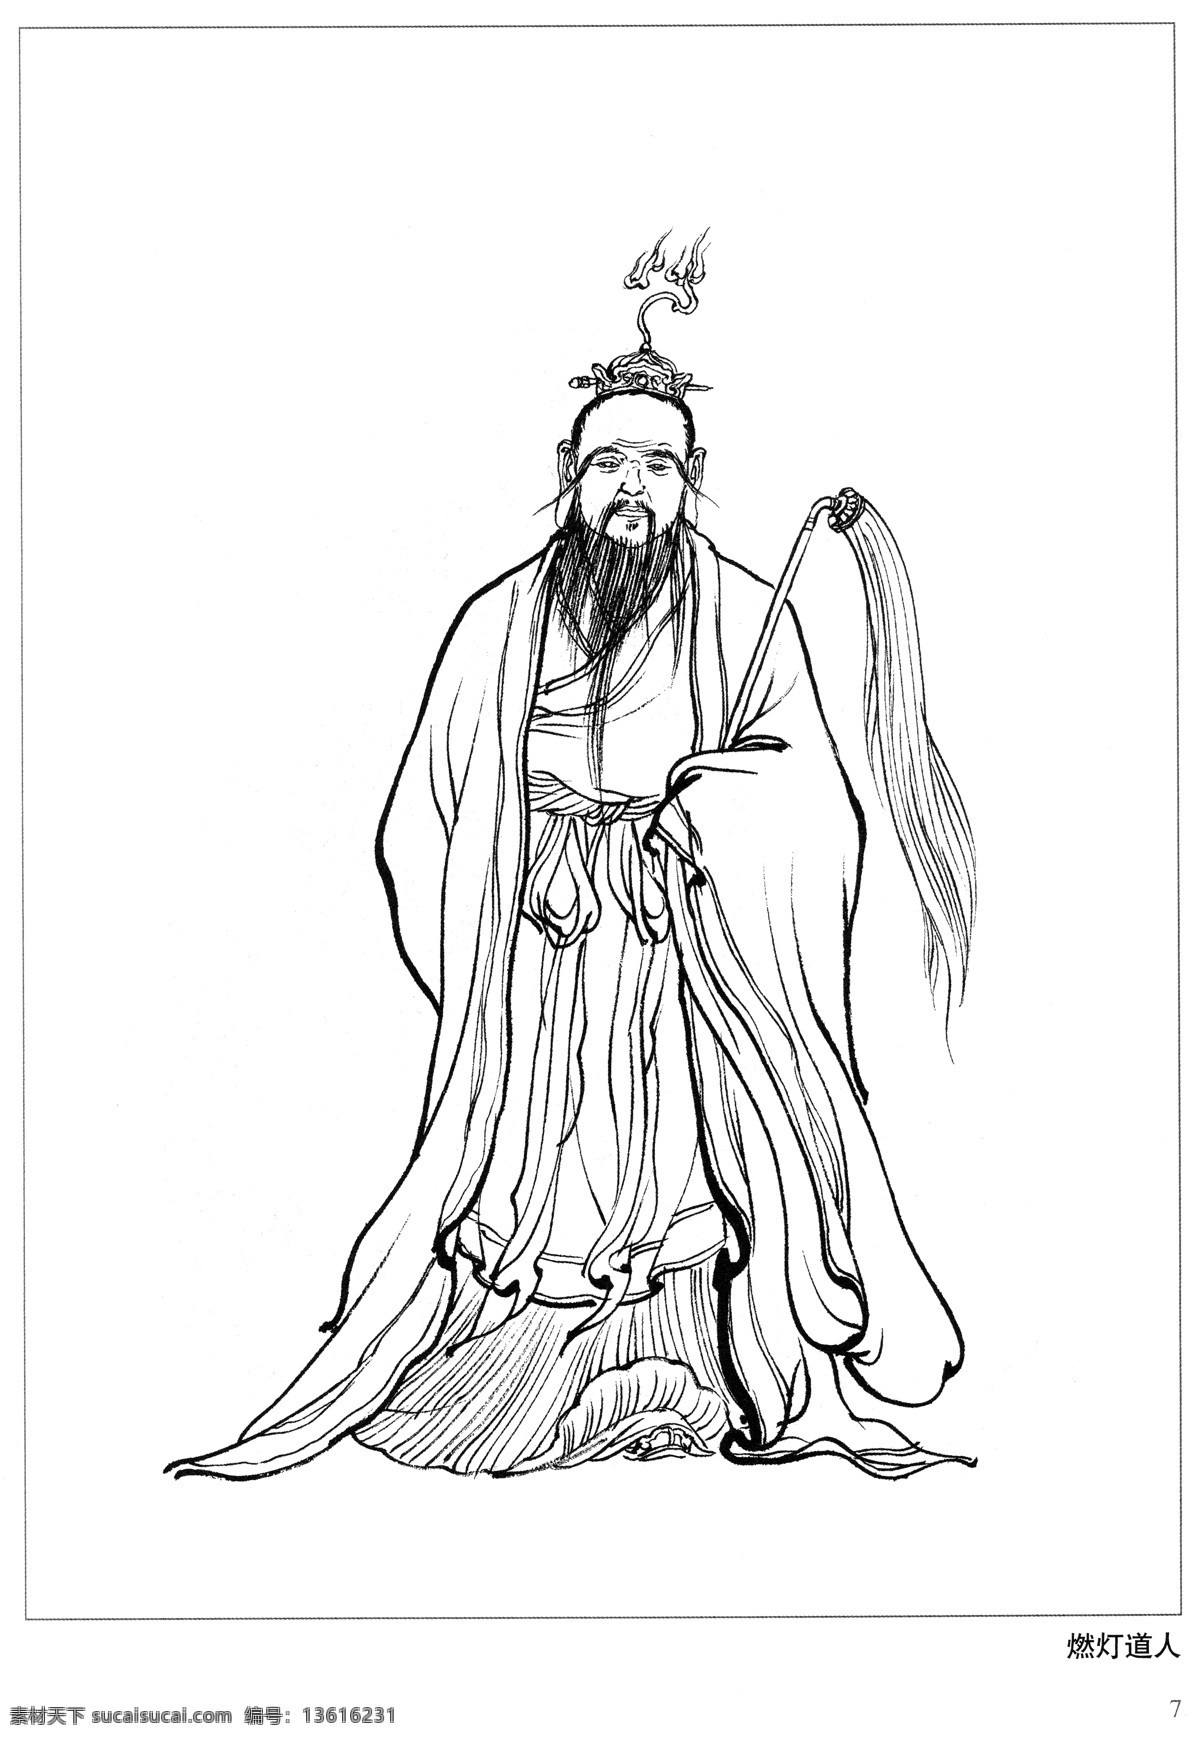 燃灯道人 封神演义 古代 神仙 白描 人物 图 文化艺术 绘画书法